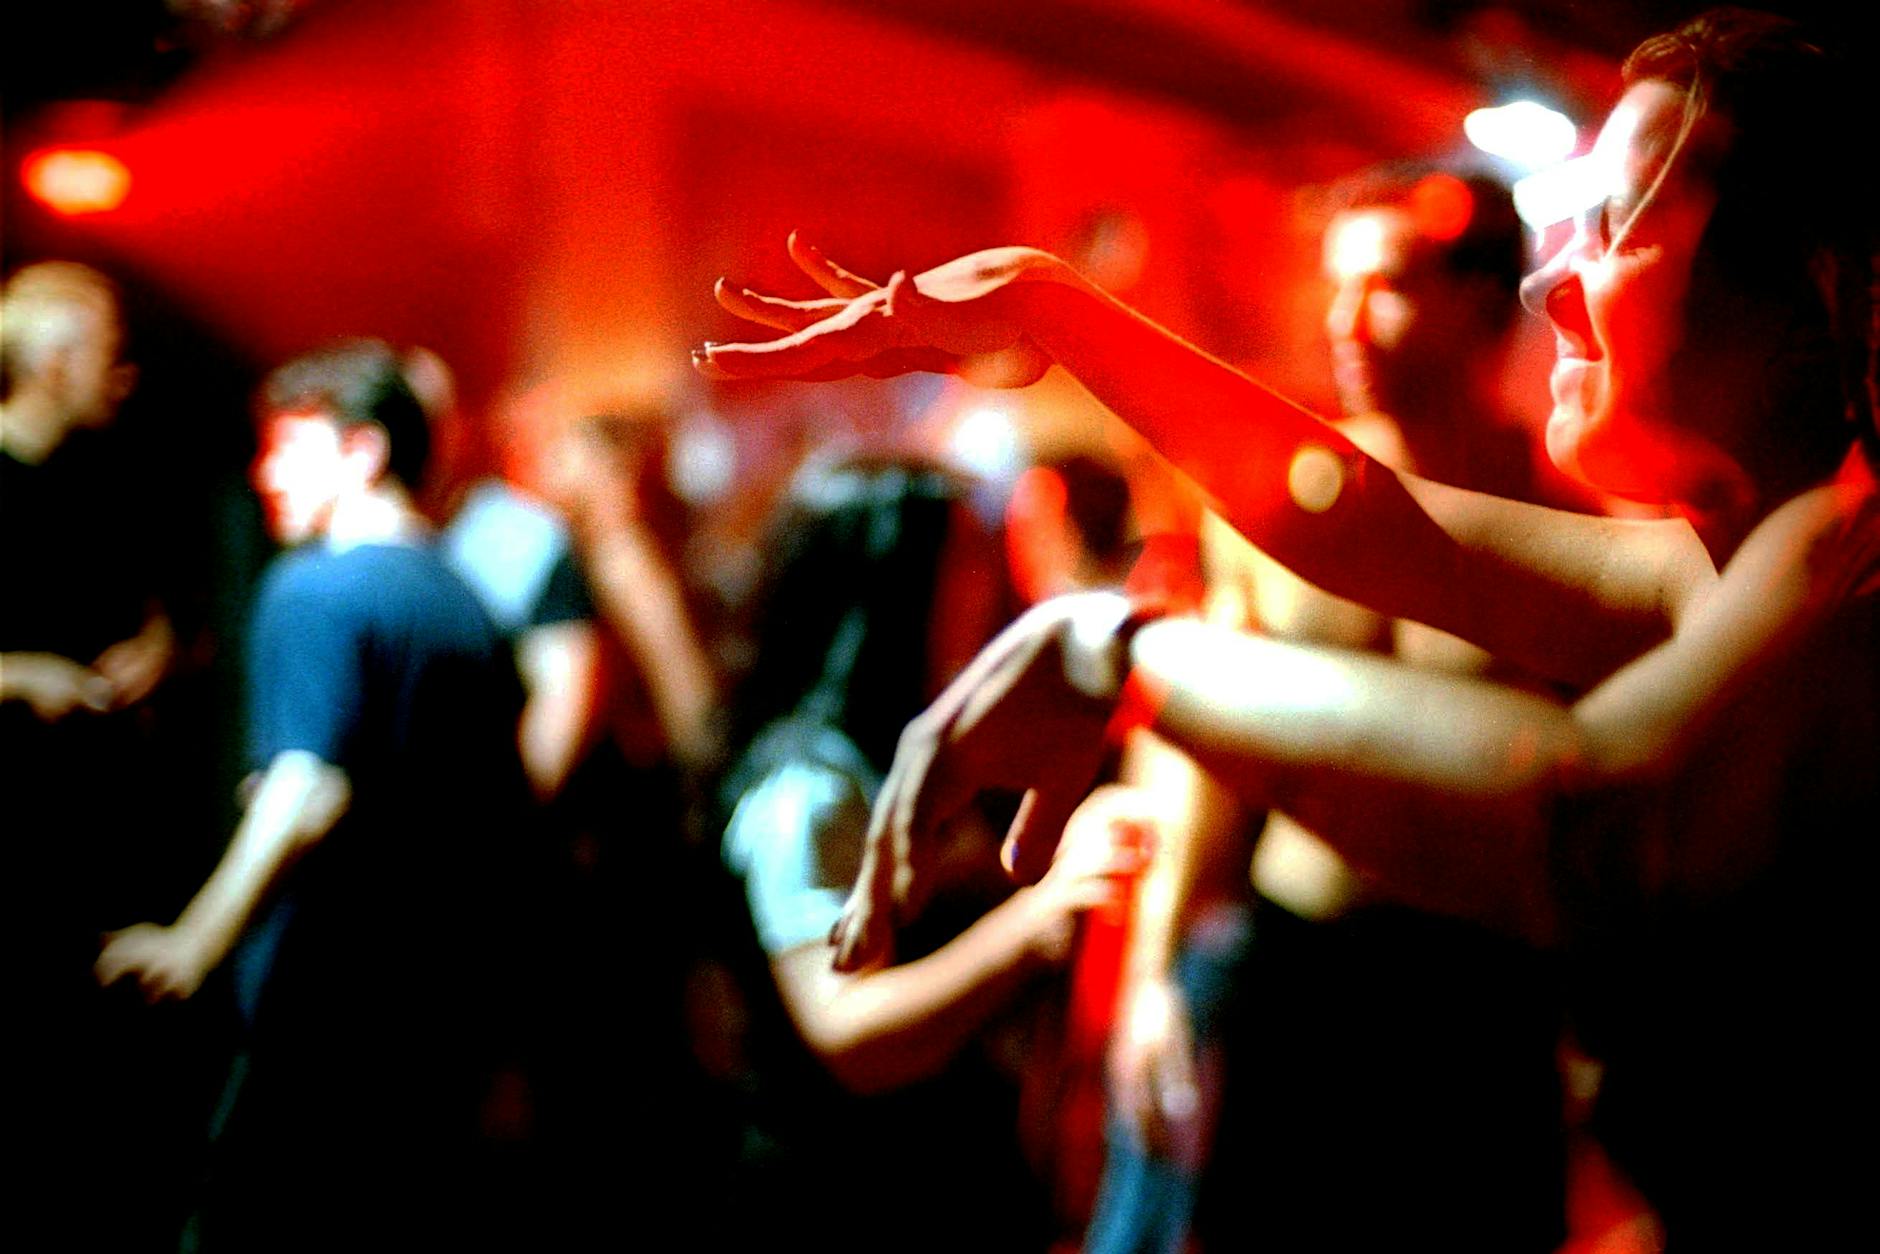 Sexarbeiter tanzen für ihre Rechte: „Blowjobs sind richtige Jobs“